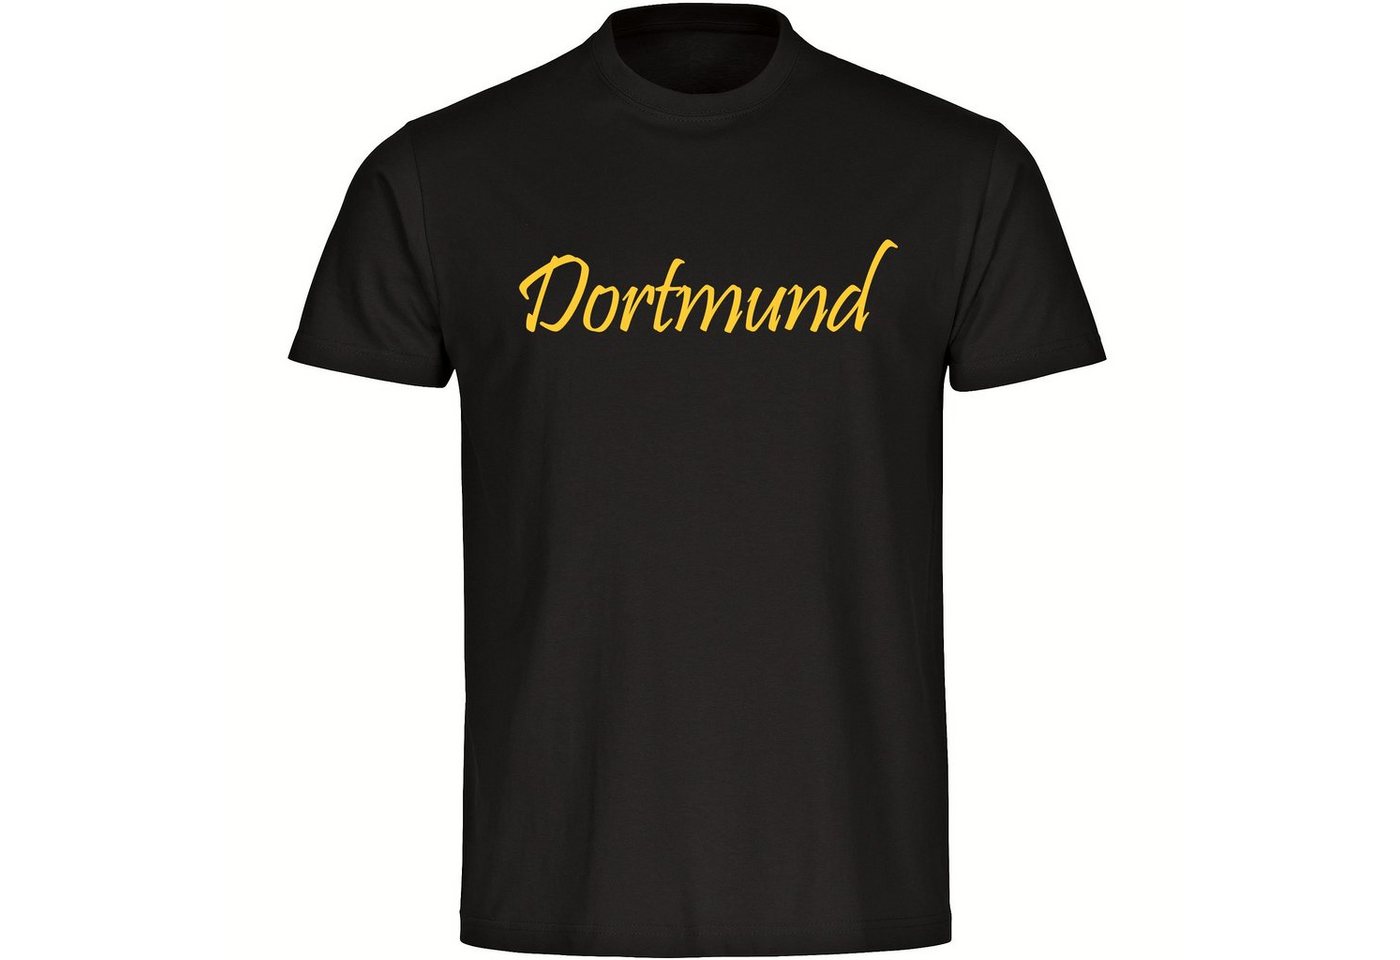 multifanshop T-Shirt Herren Dortmund - Schriftzug - Männer von multifanshop